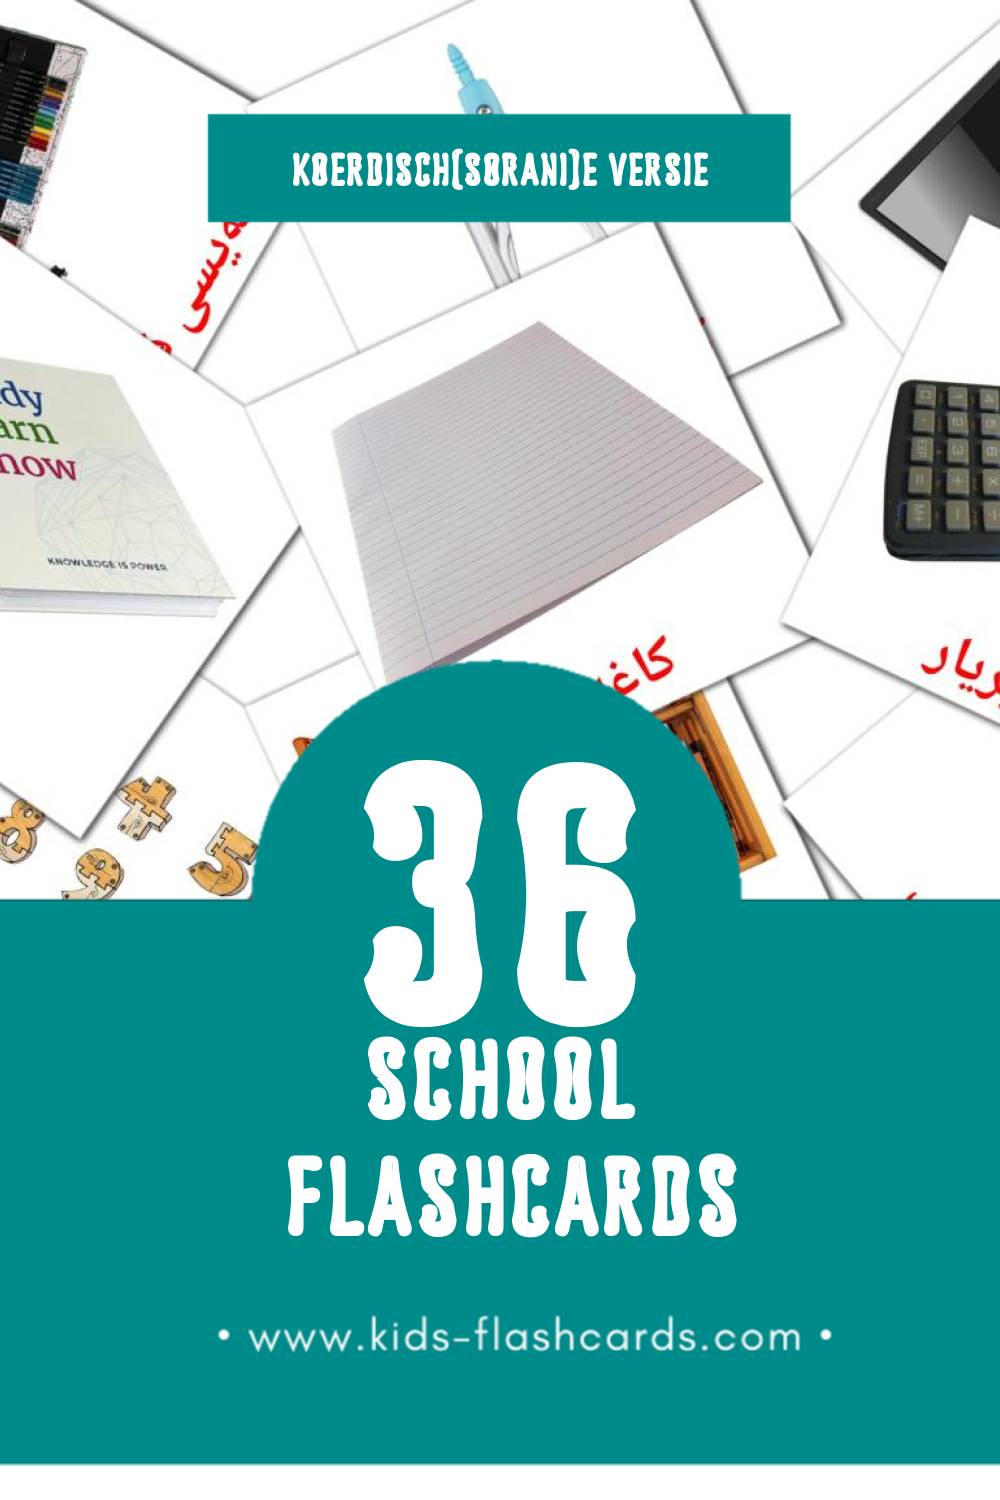 Visuele قوتابخانە Flashcards voor Kleuters (36 kaarten in het Koerdisch(sorani))